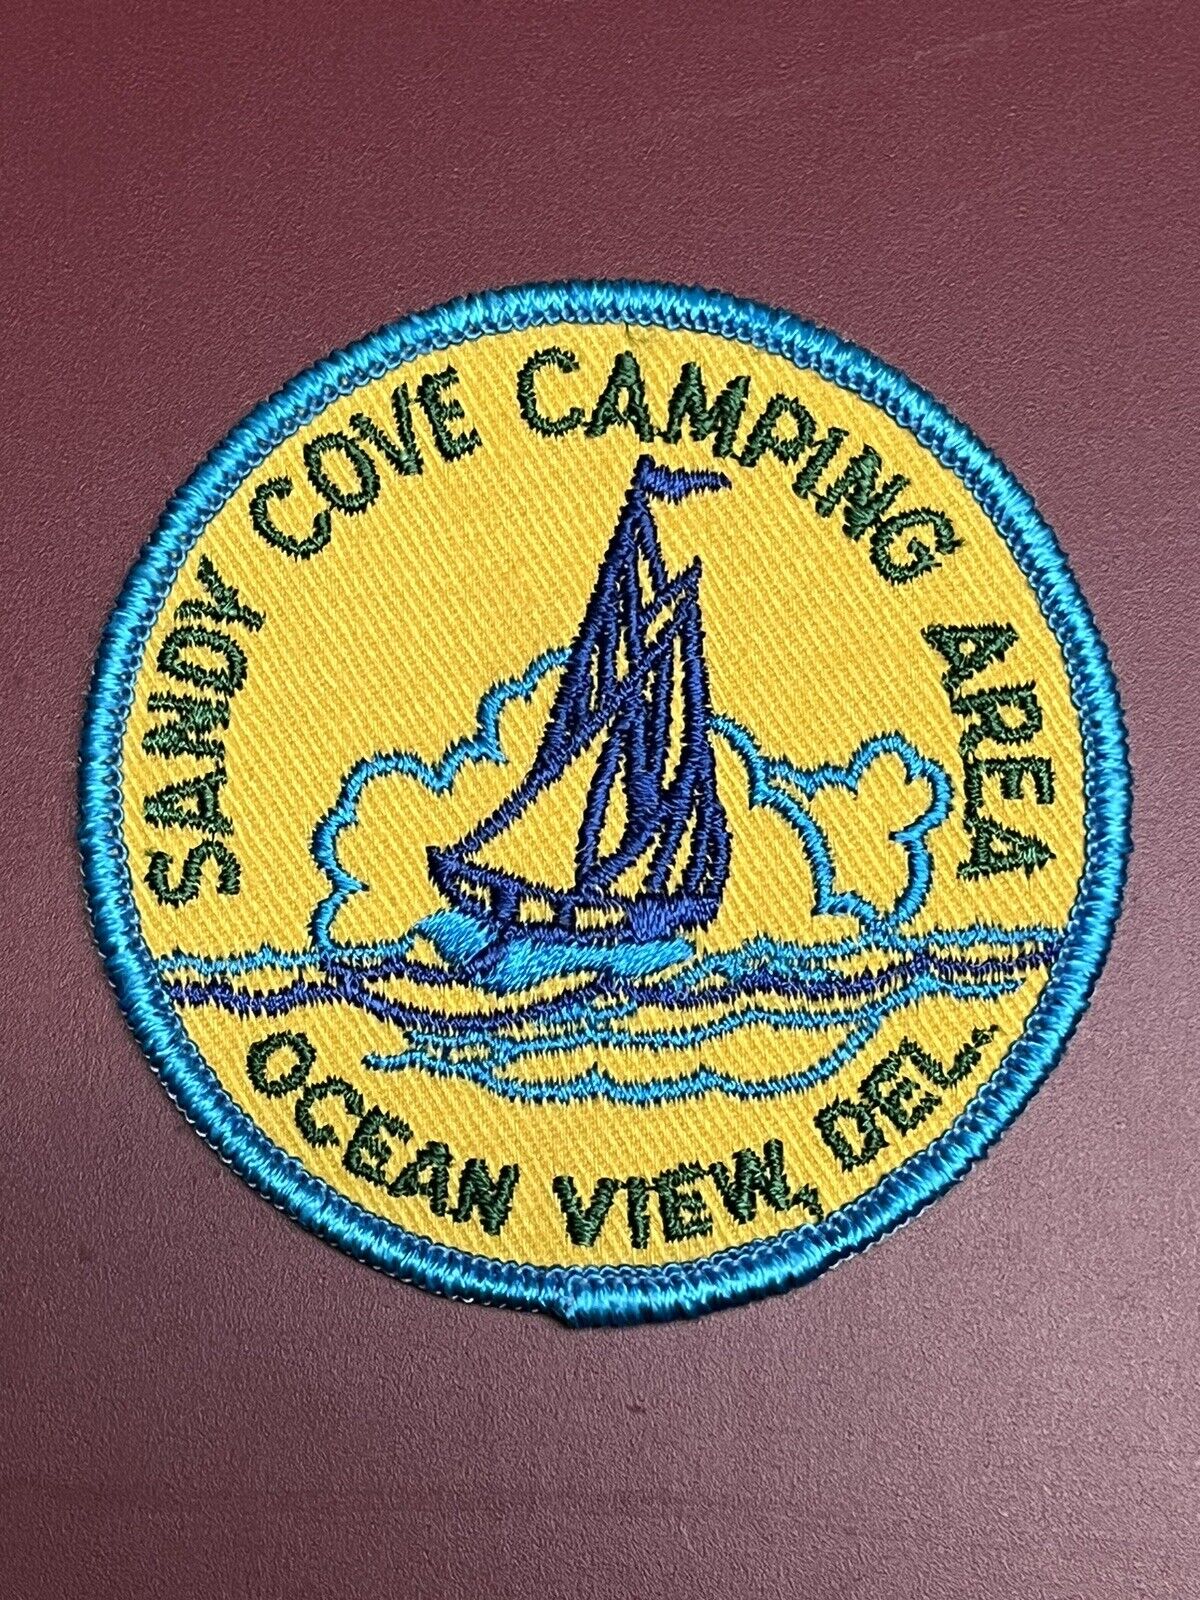 Vintage Sandy Cove Camping Area Souvenir Patch